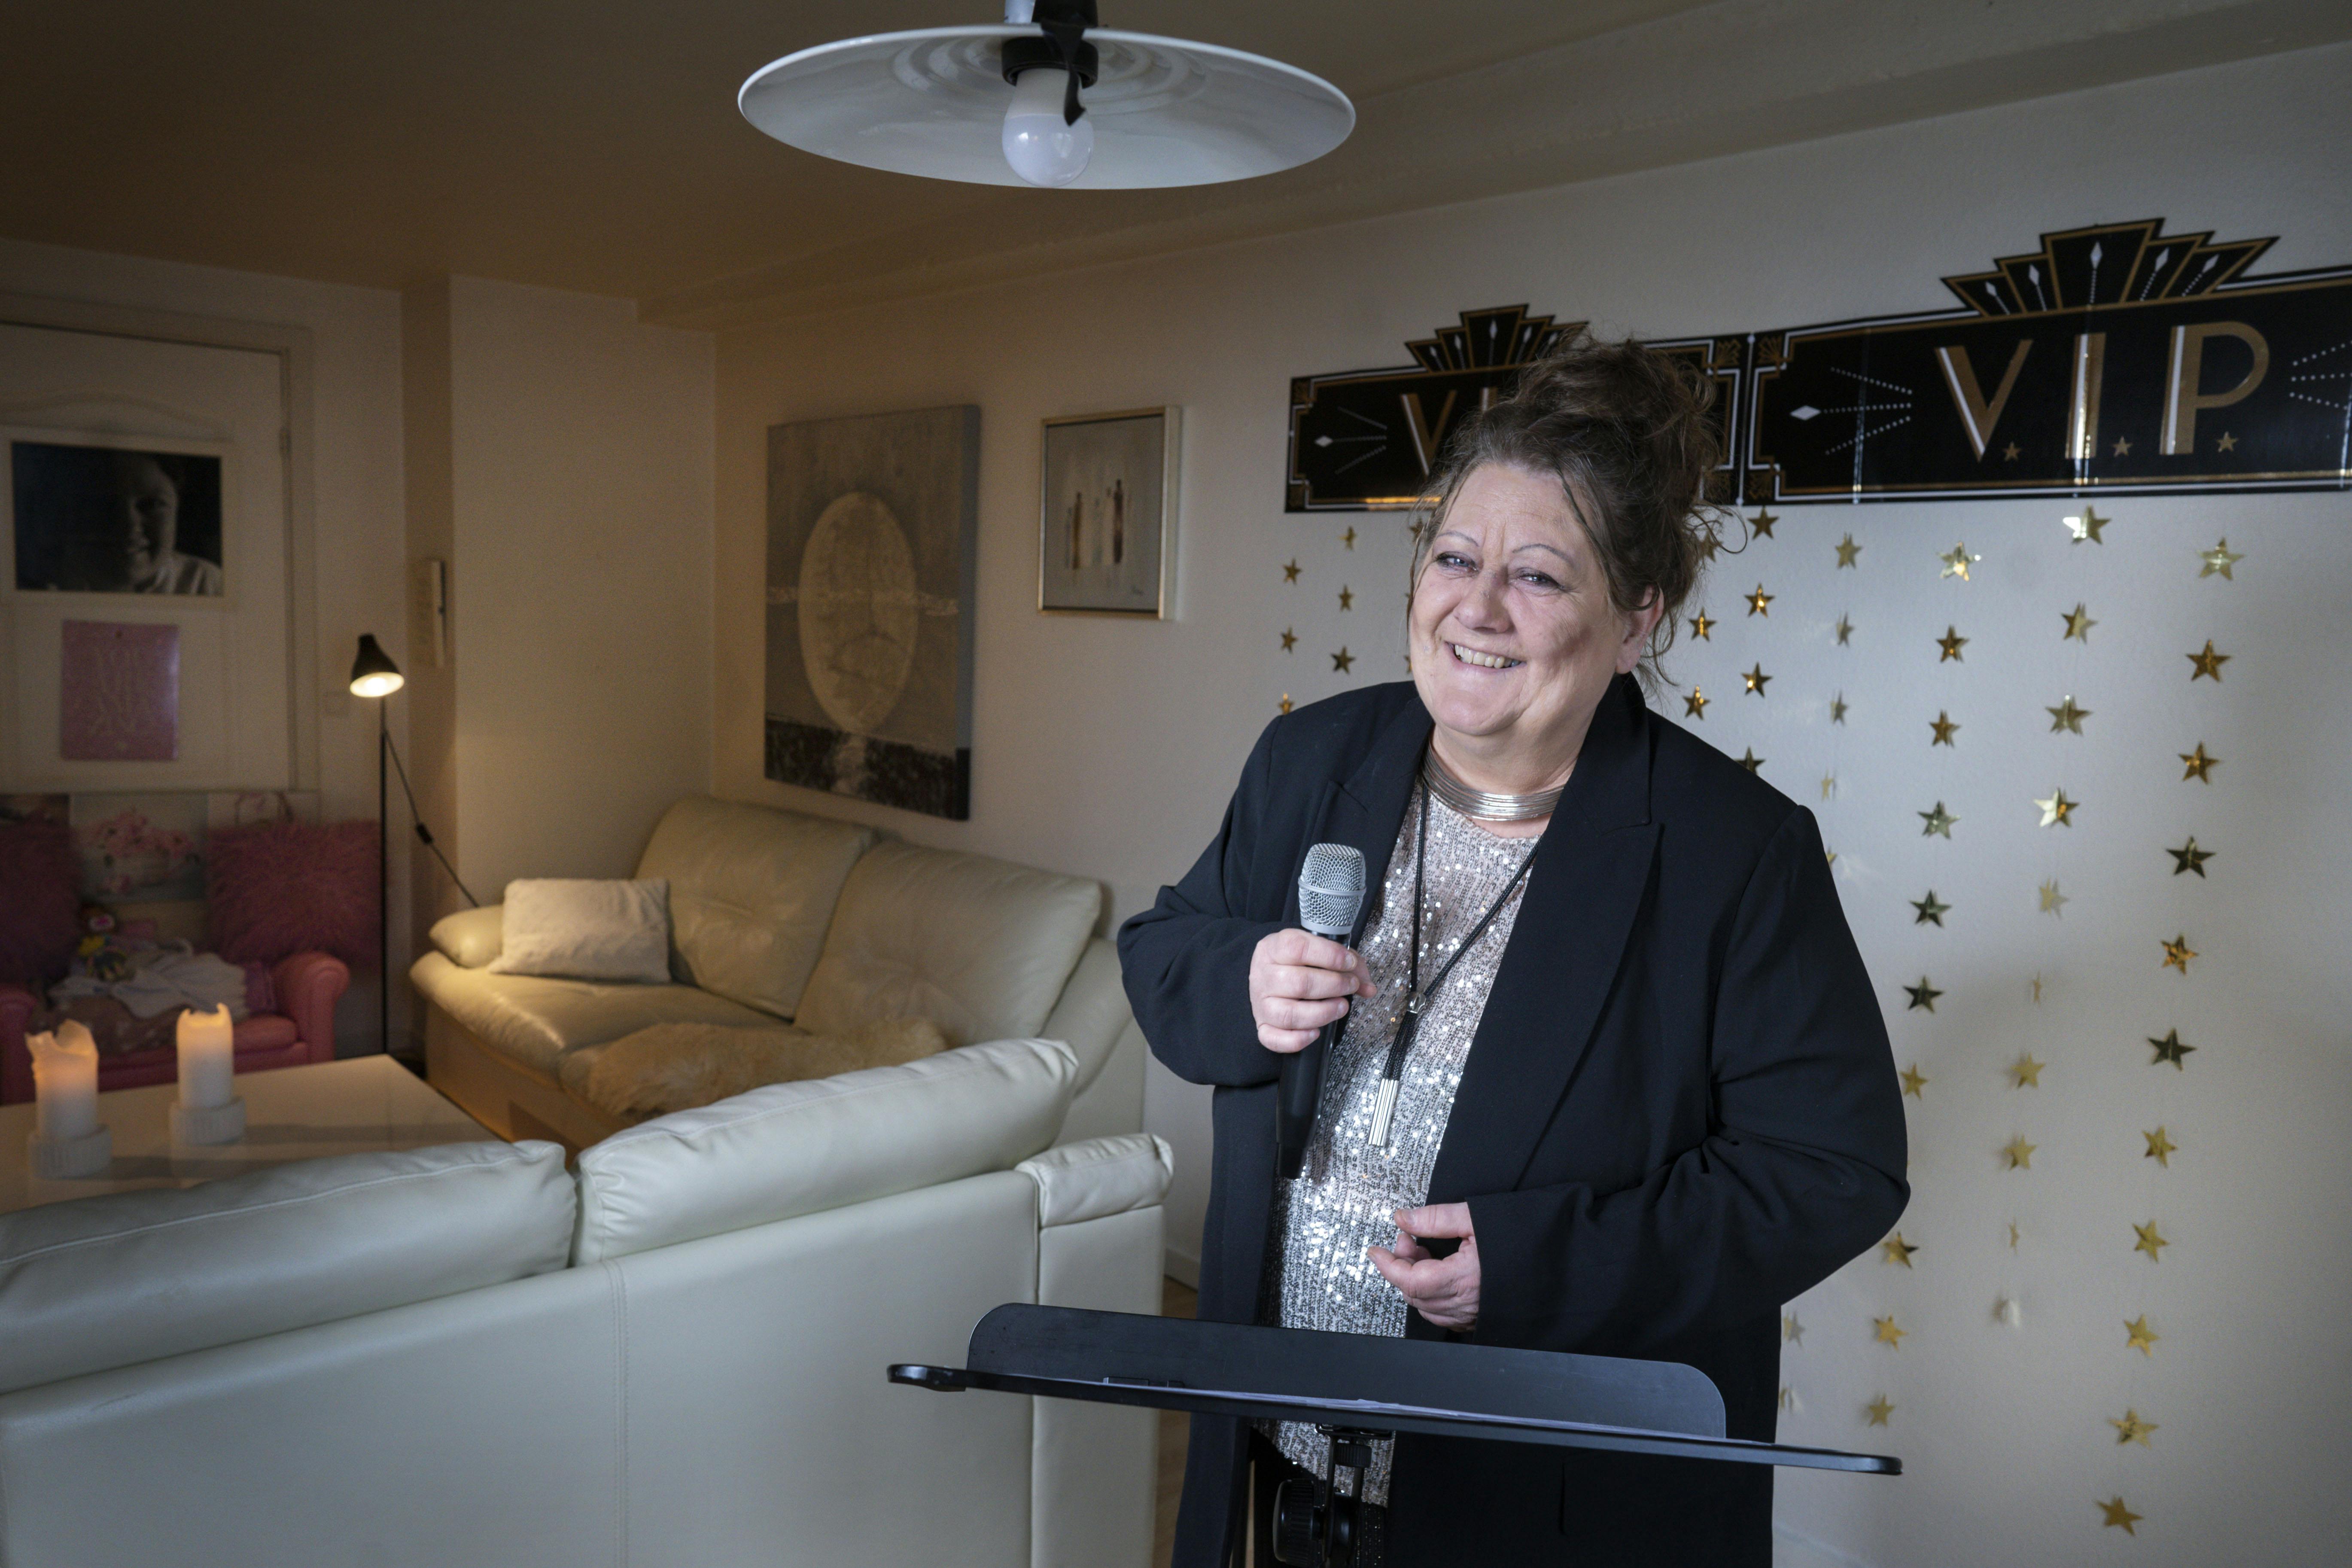 Sangerinden Nynne Qvick laver corona-tv hjemme fra sin stue i form af talkshowet "Grib chancen".